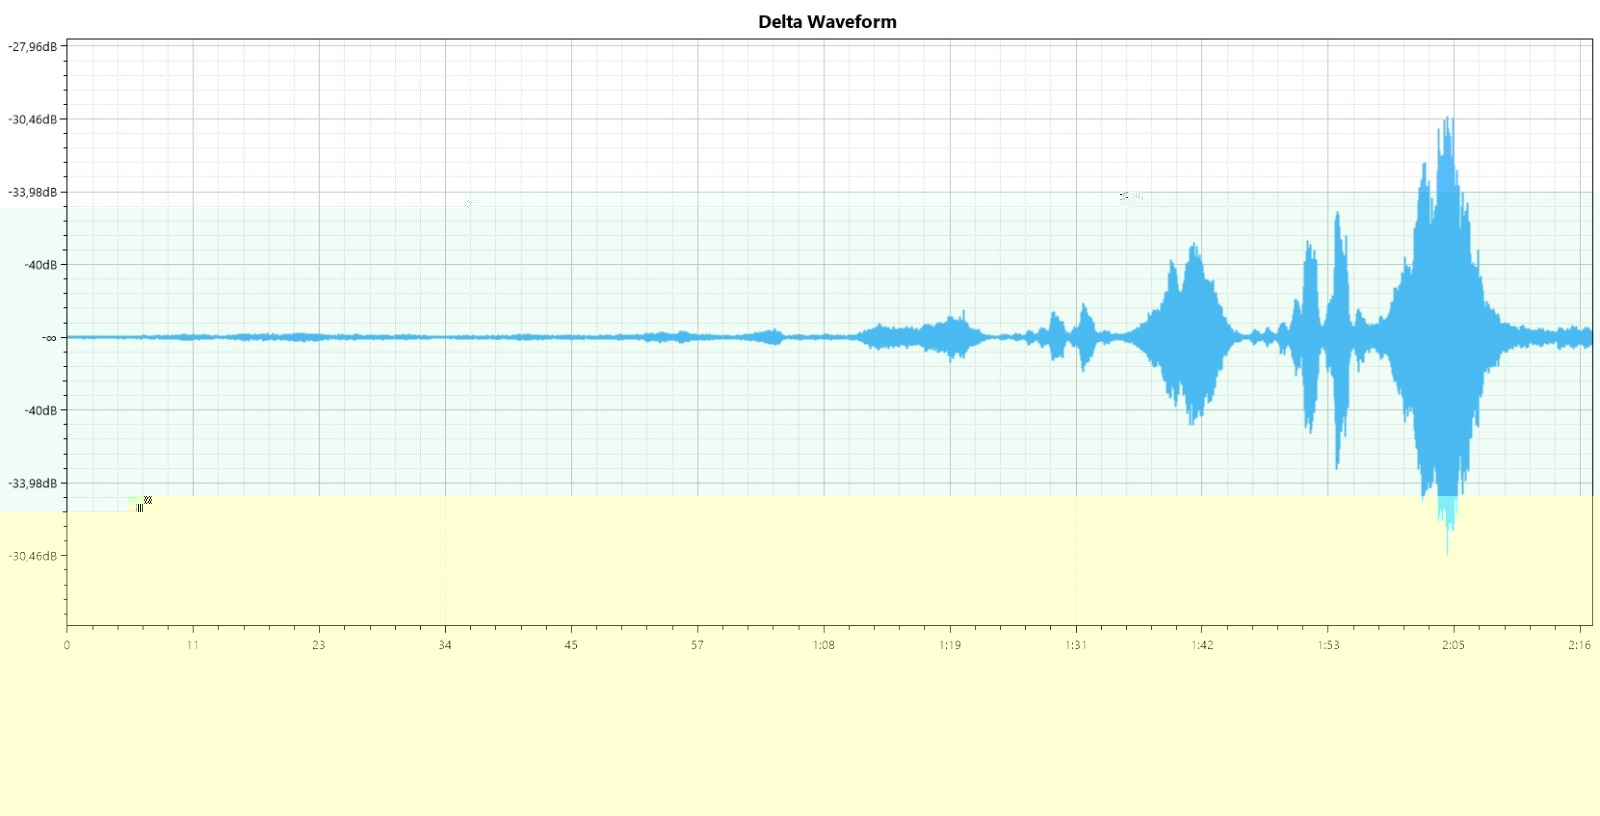 DW_delta_waveform.jpg